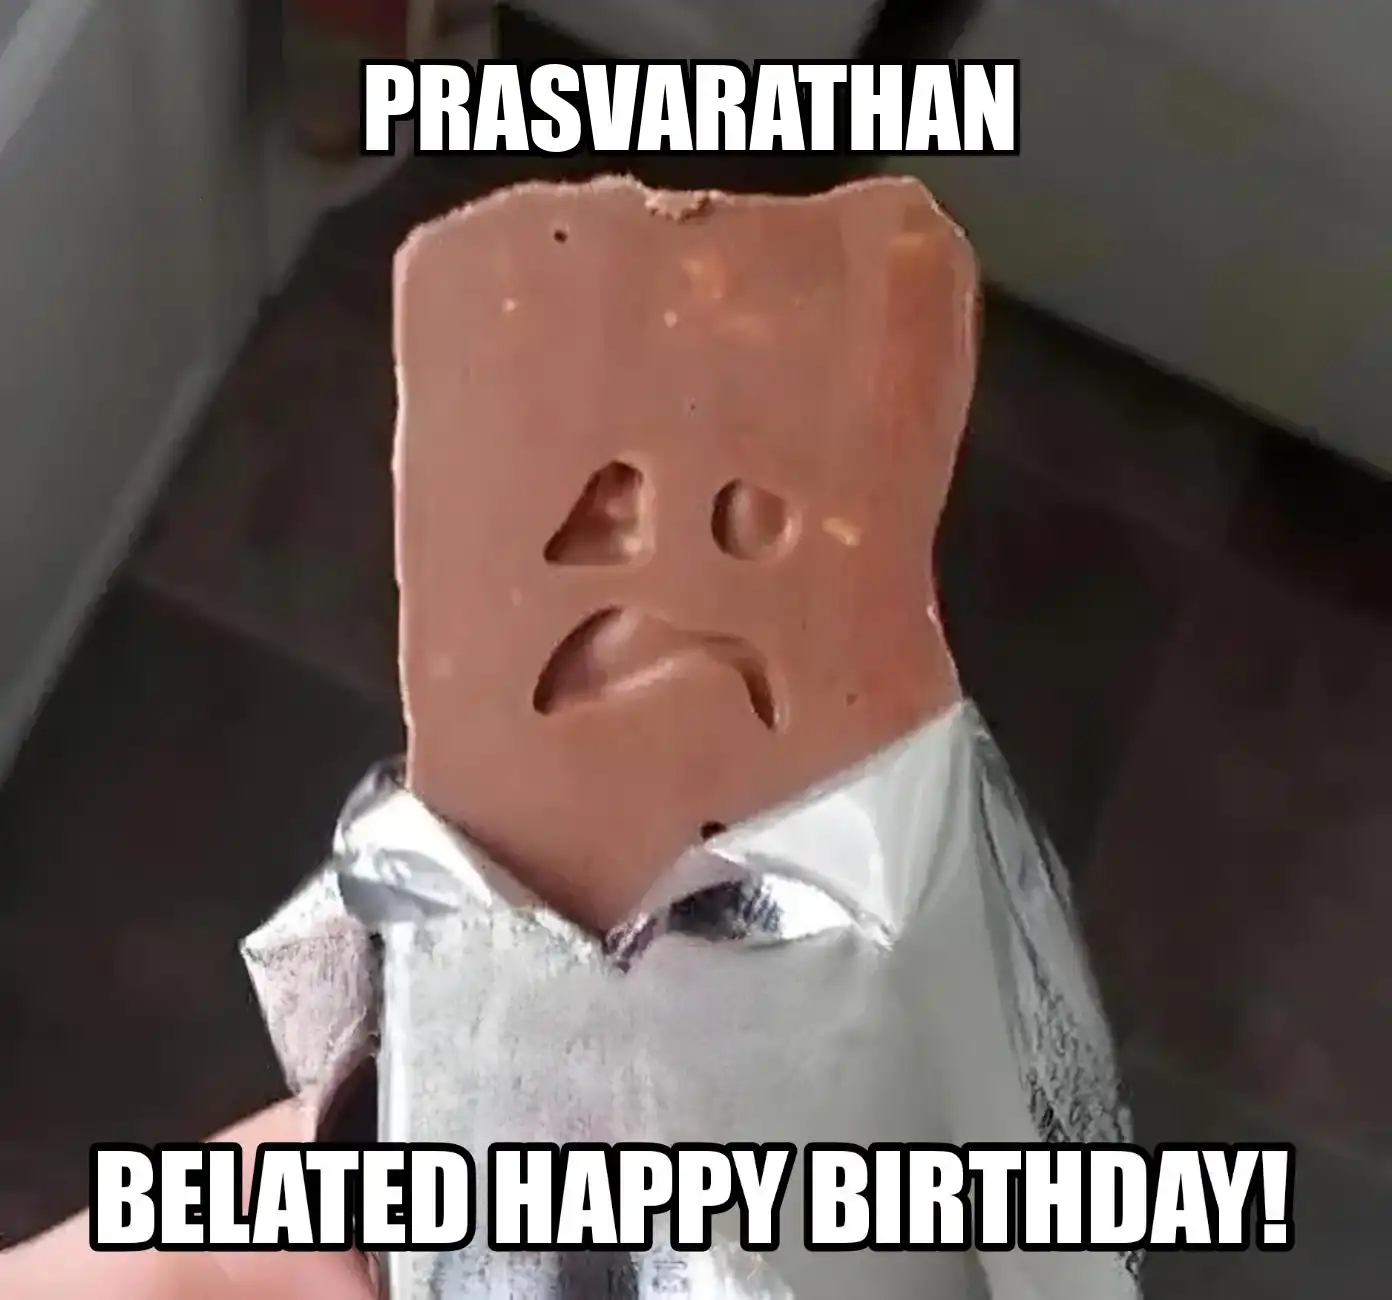 Happy Birthday Prasvarathan Belated Happy Birthday Meme